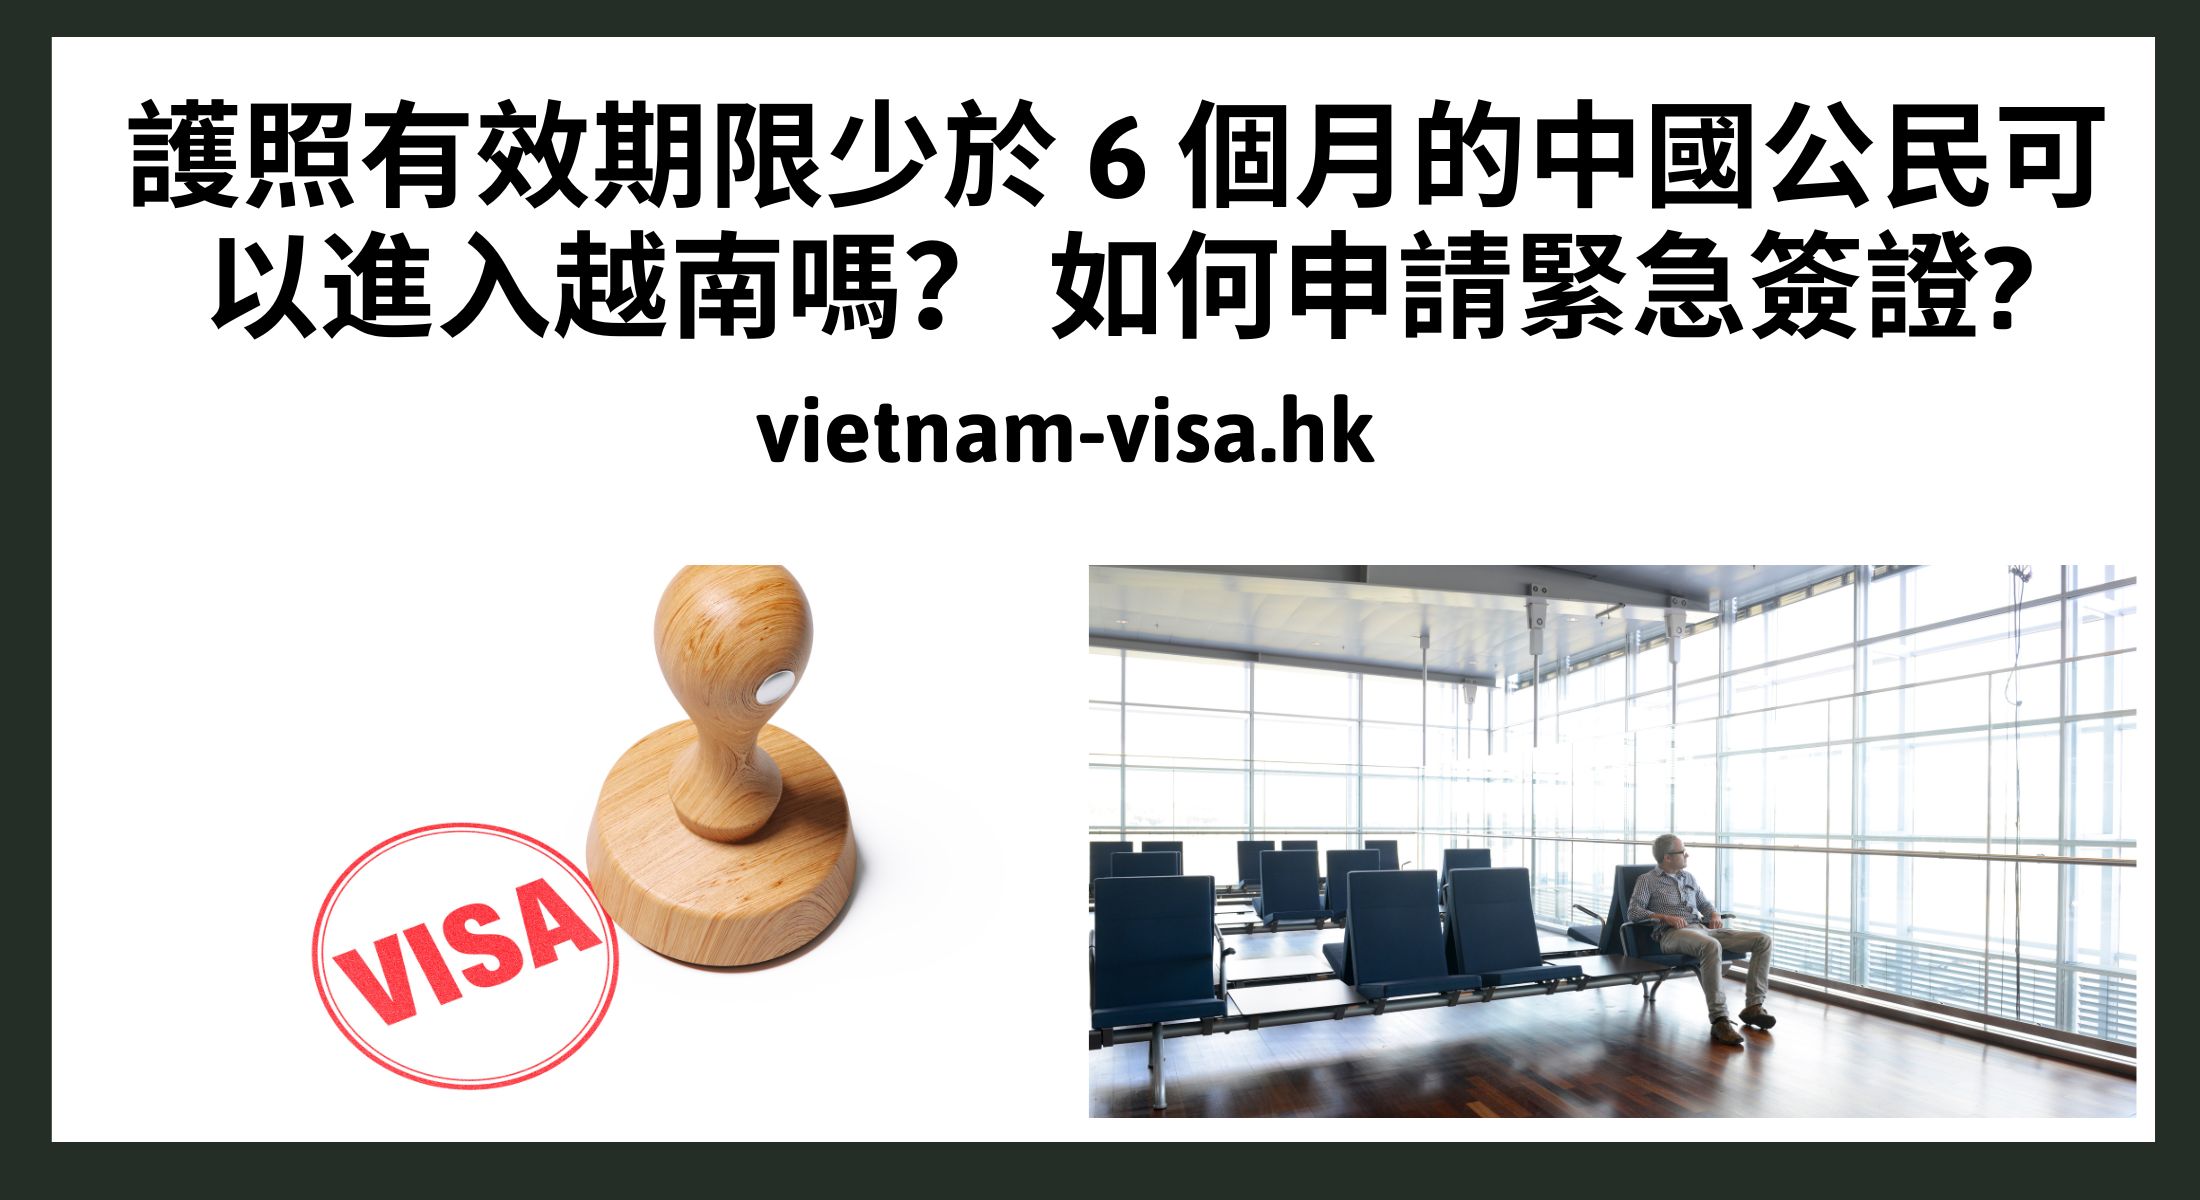 護照有效期限少於 6 個月的中國公民可以進入越南嗎？ 如何申請緊急簽證?